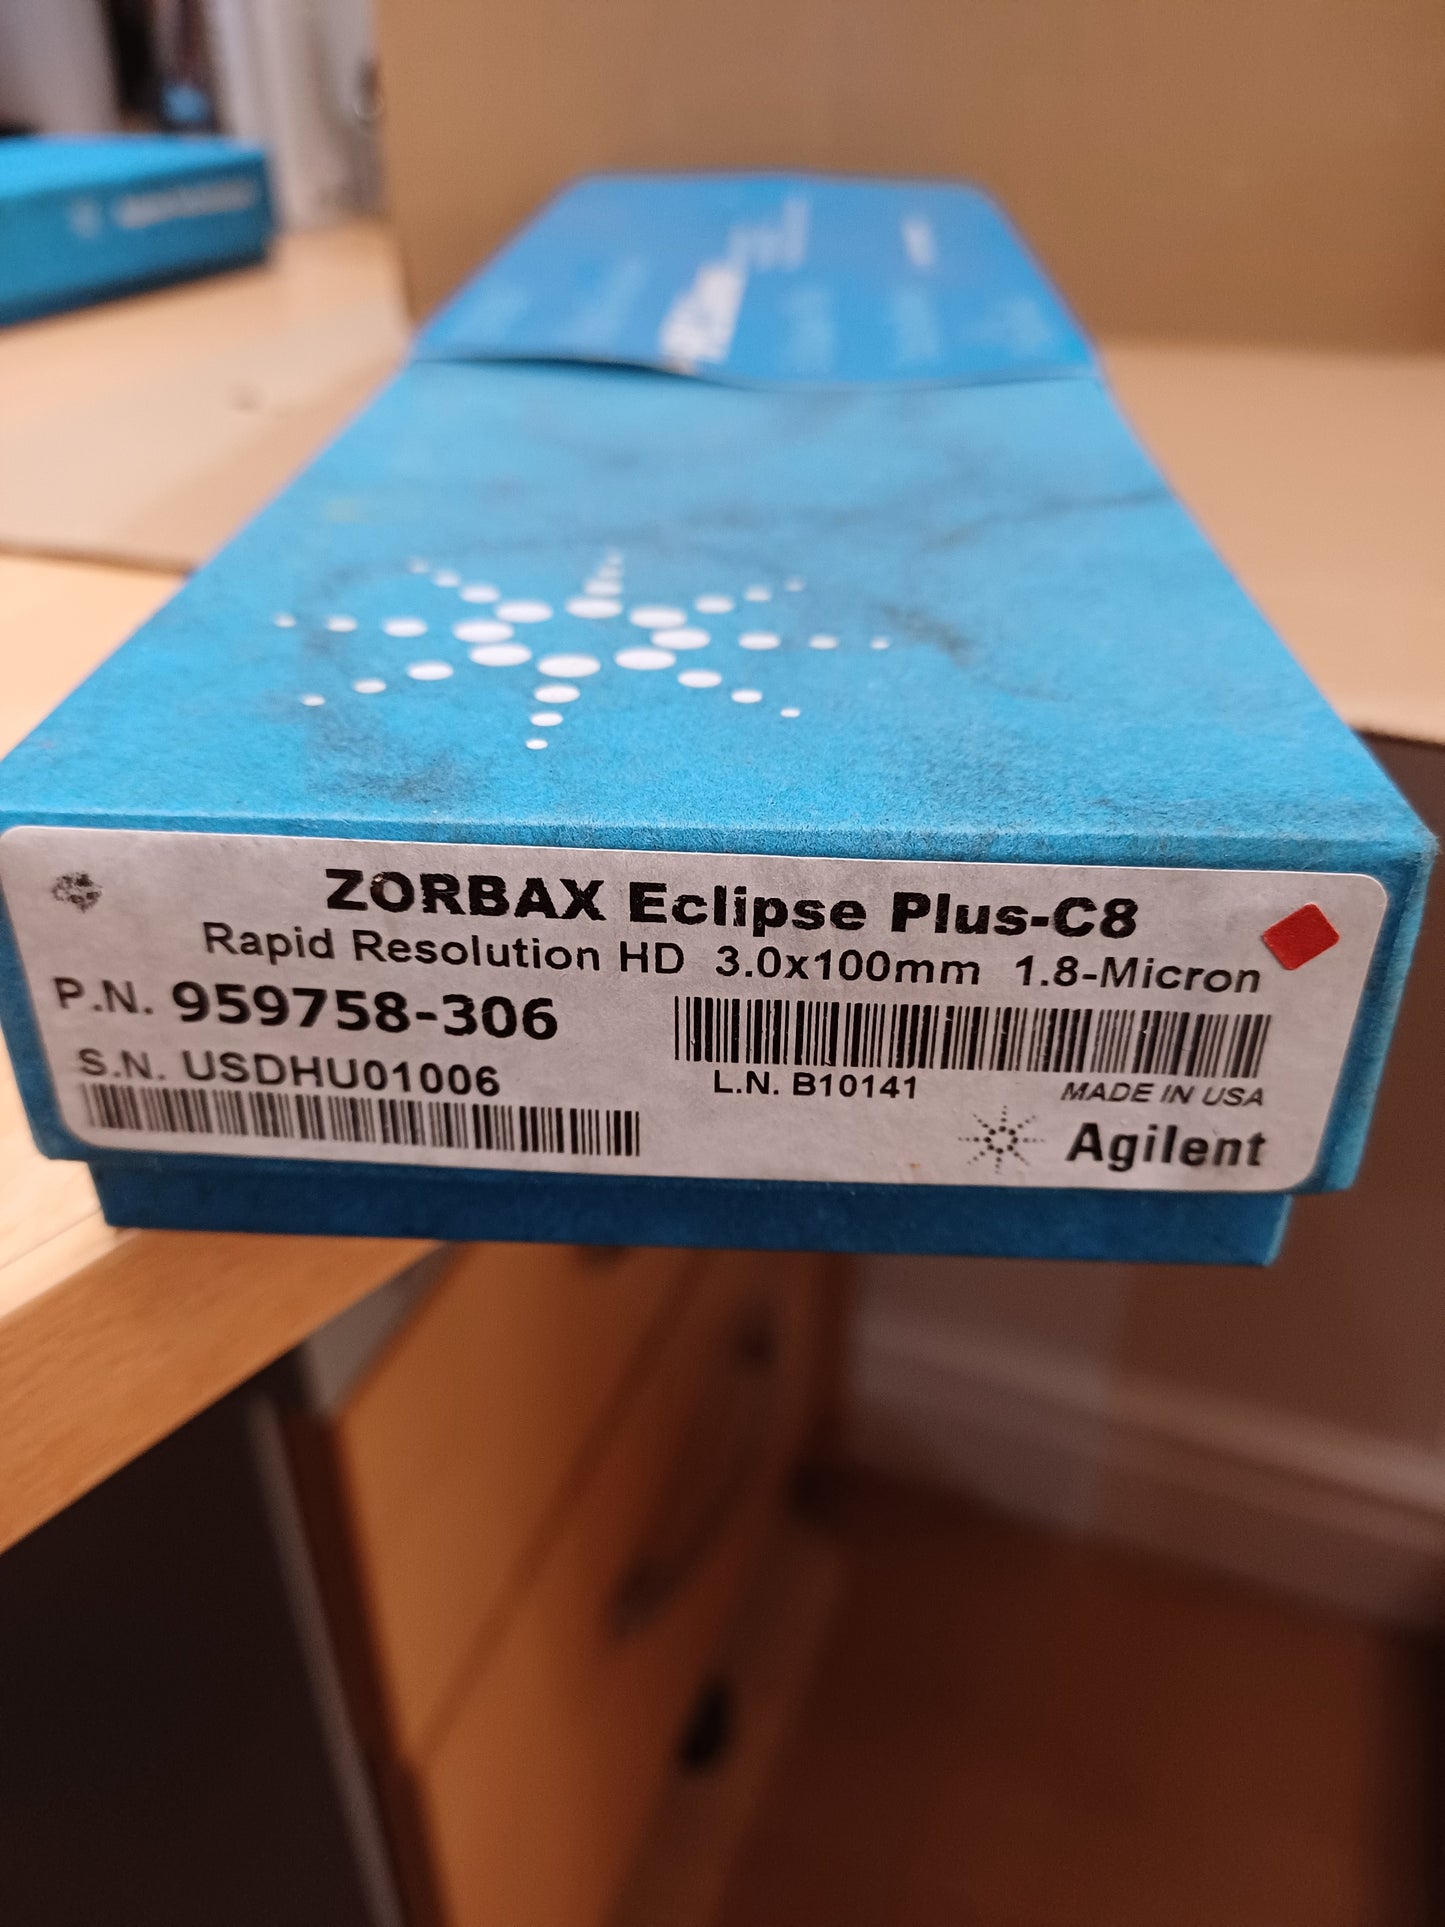 959758-306 - AGILENT, ZORBAX RRHD Eclipse Plus C8, 95Å, 3.0 x 100 mm, 1.8 µm, 1200 bar pressure limit